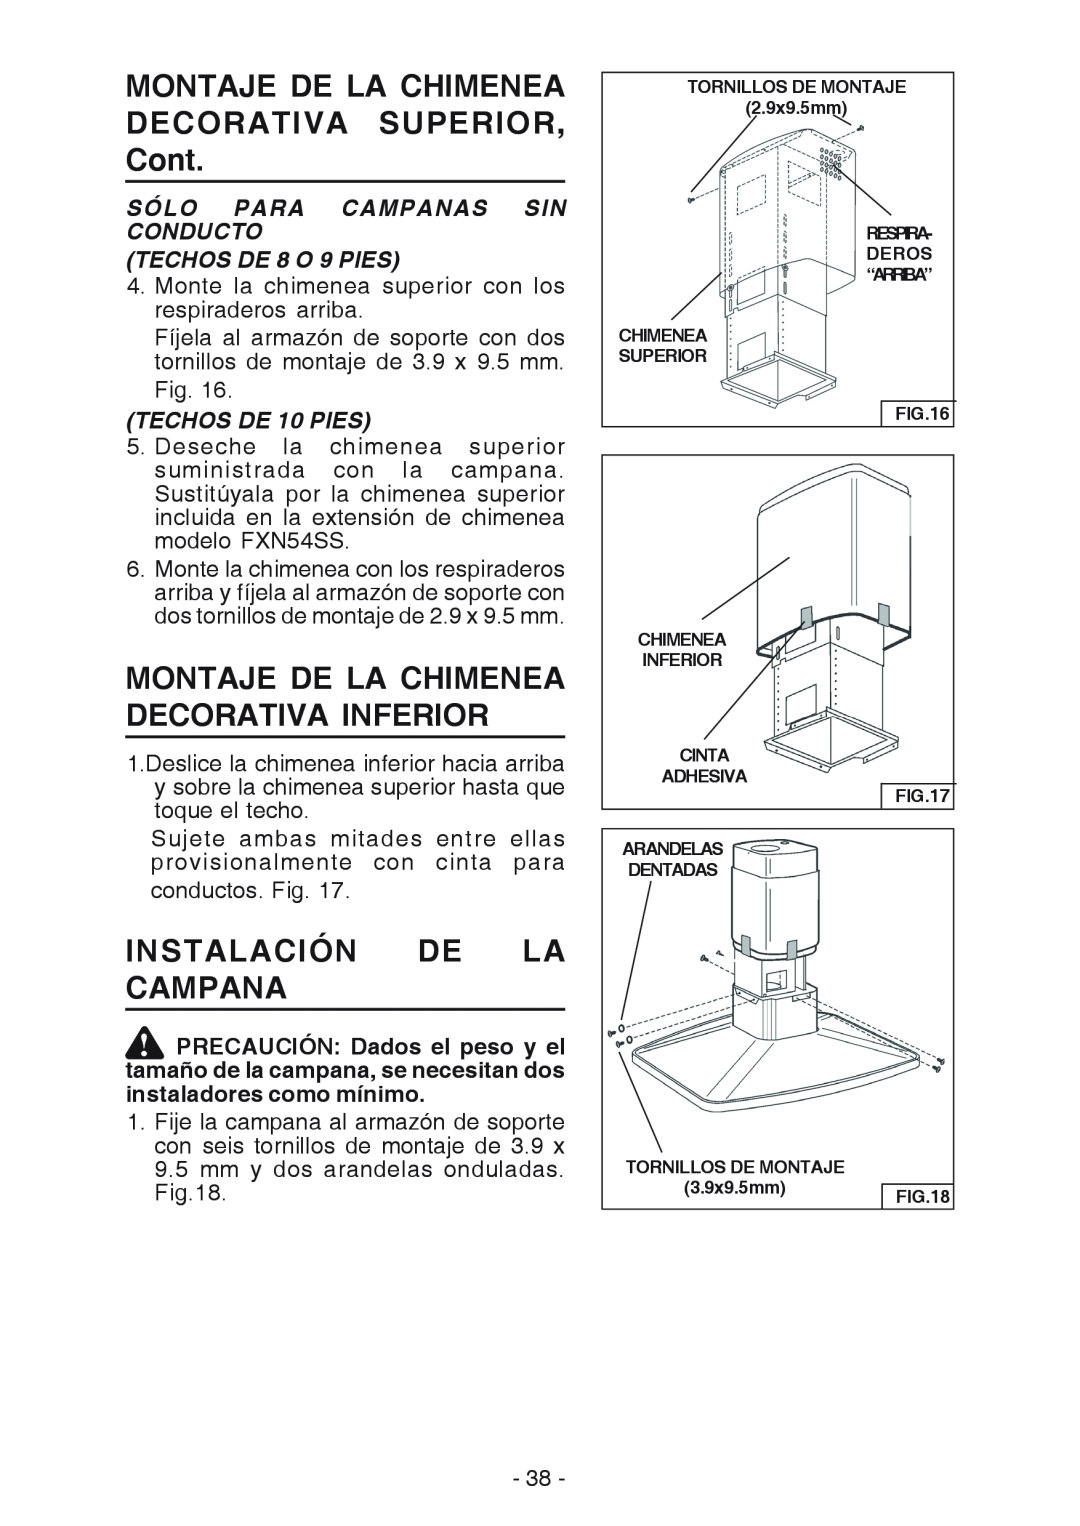 Broan E54000 manual MONTAJE DE LA CHIMENEA DECORATIVA SUPERIOR, Cont, Montaje De La Chimenea Decorativa Inferior 